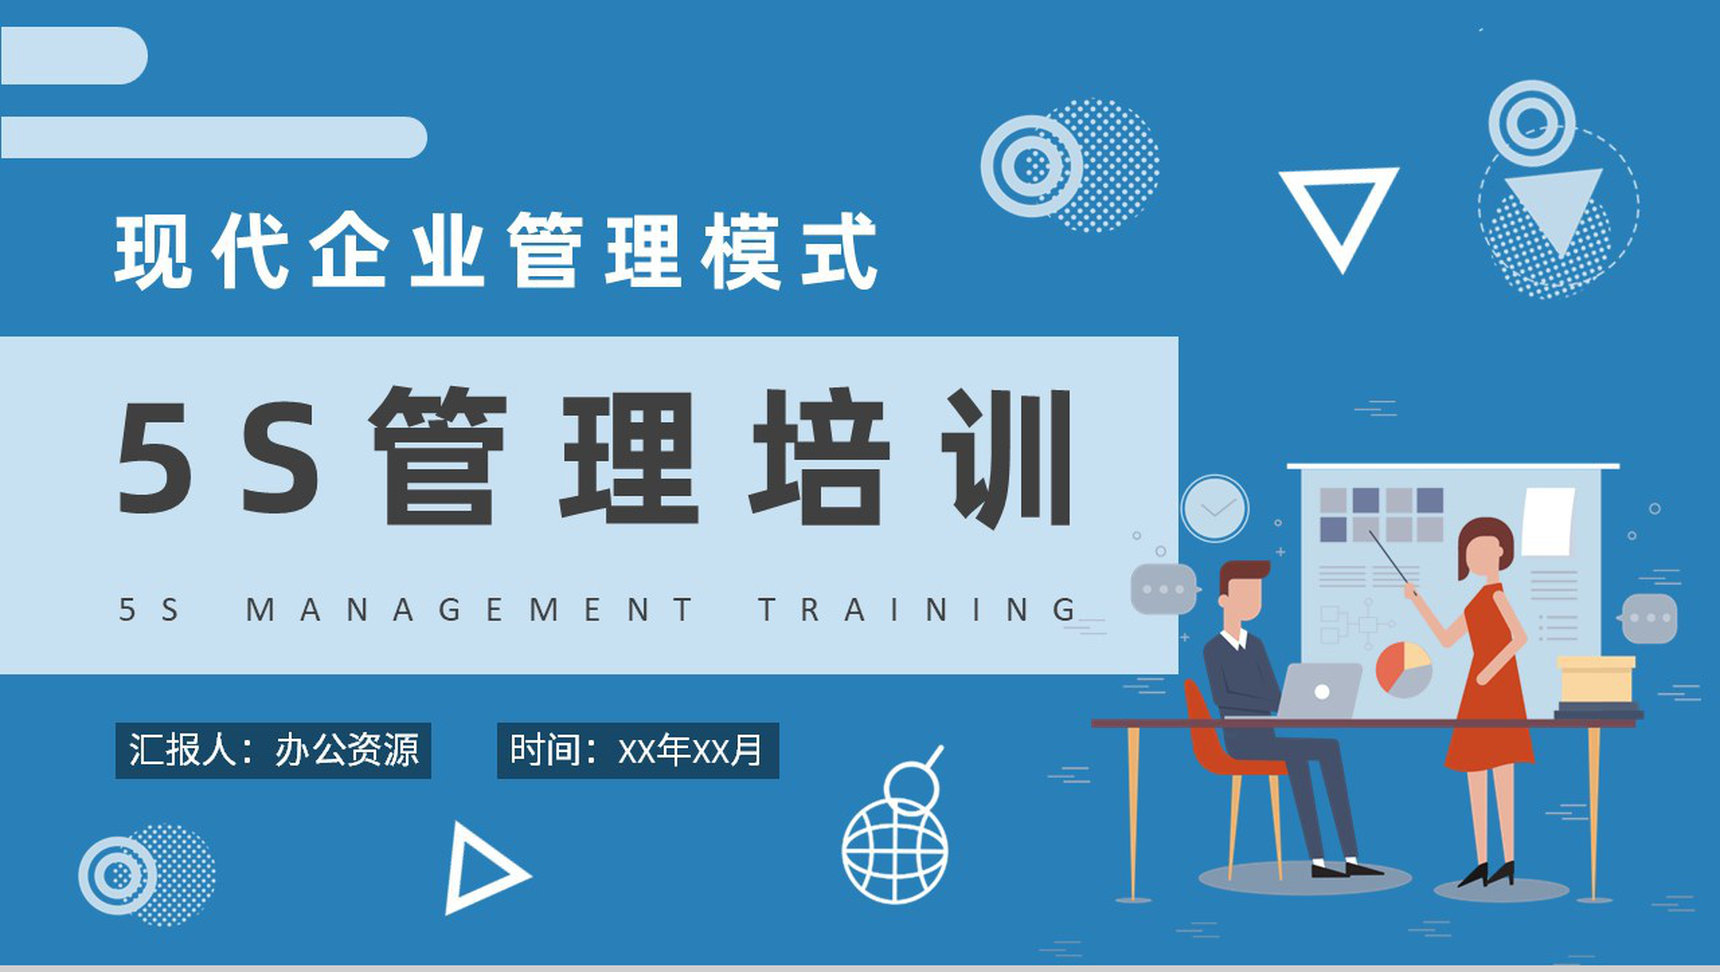 5S管理内容和标准培训现代企业管理模式知识学习PPT模板-1